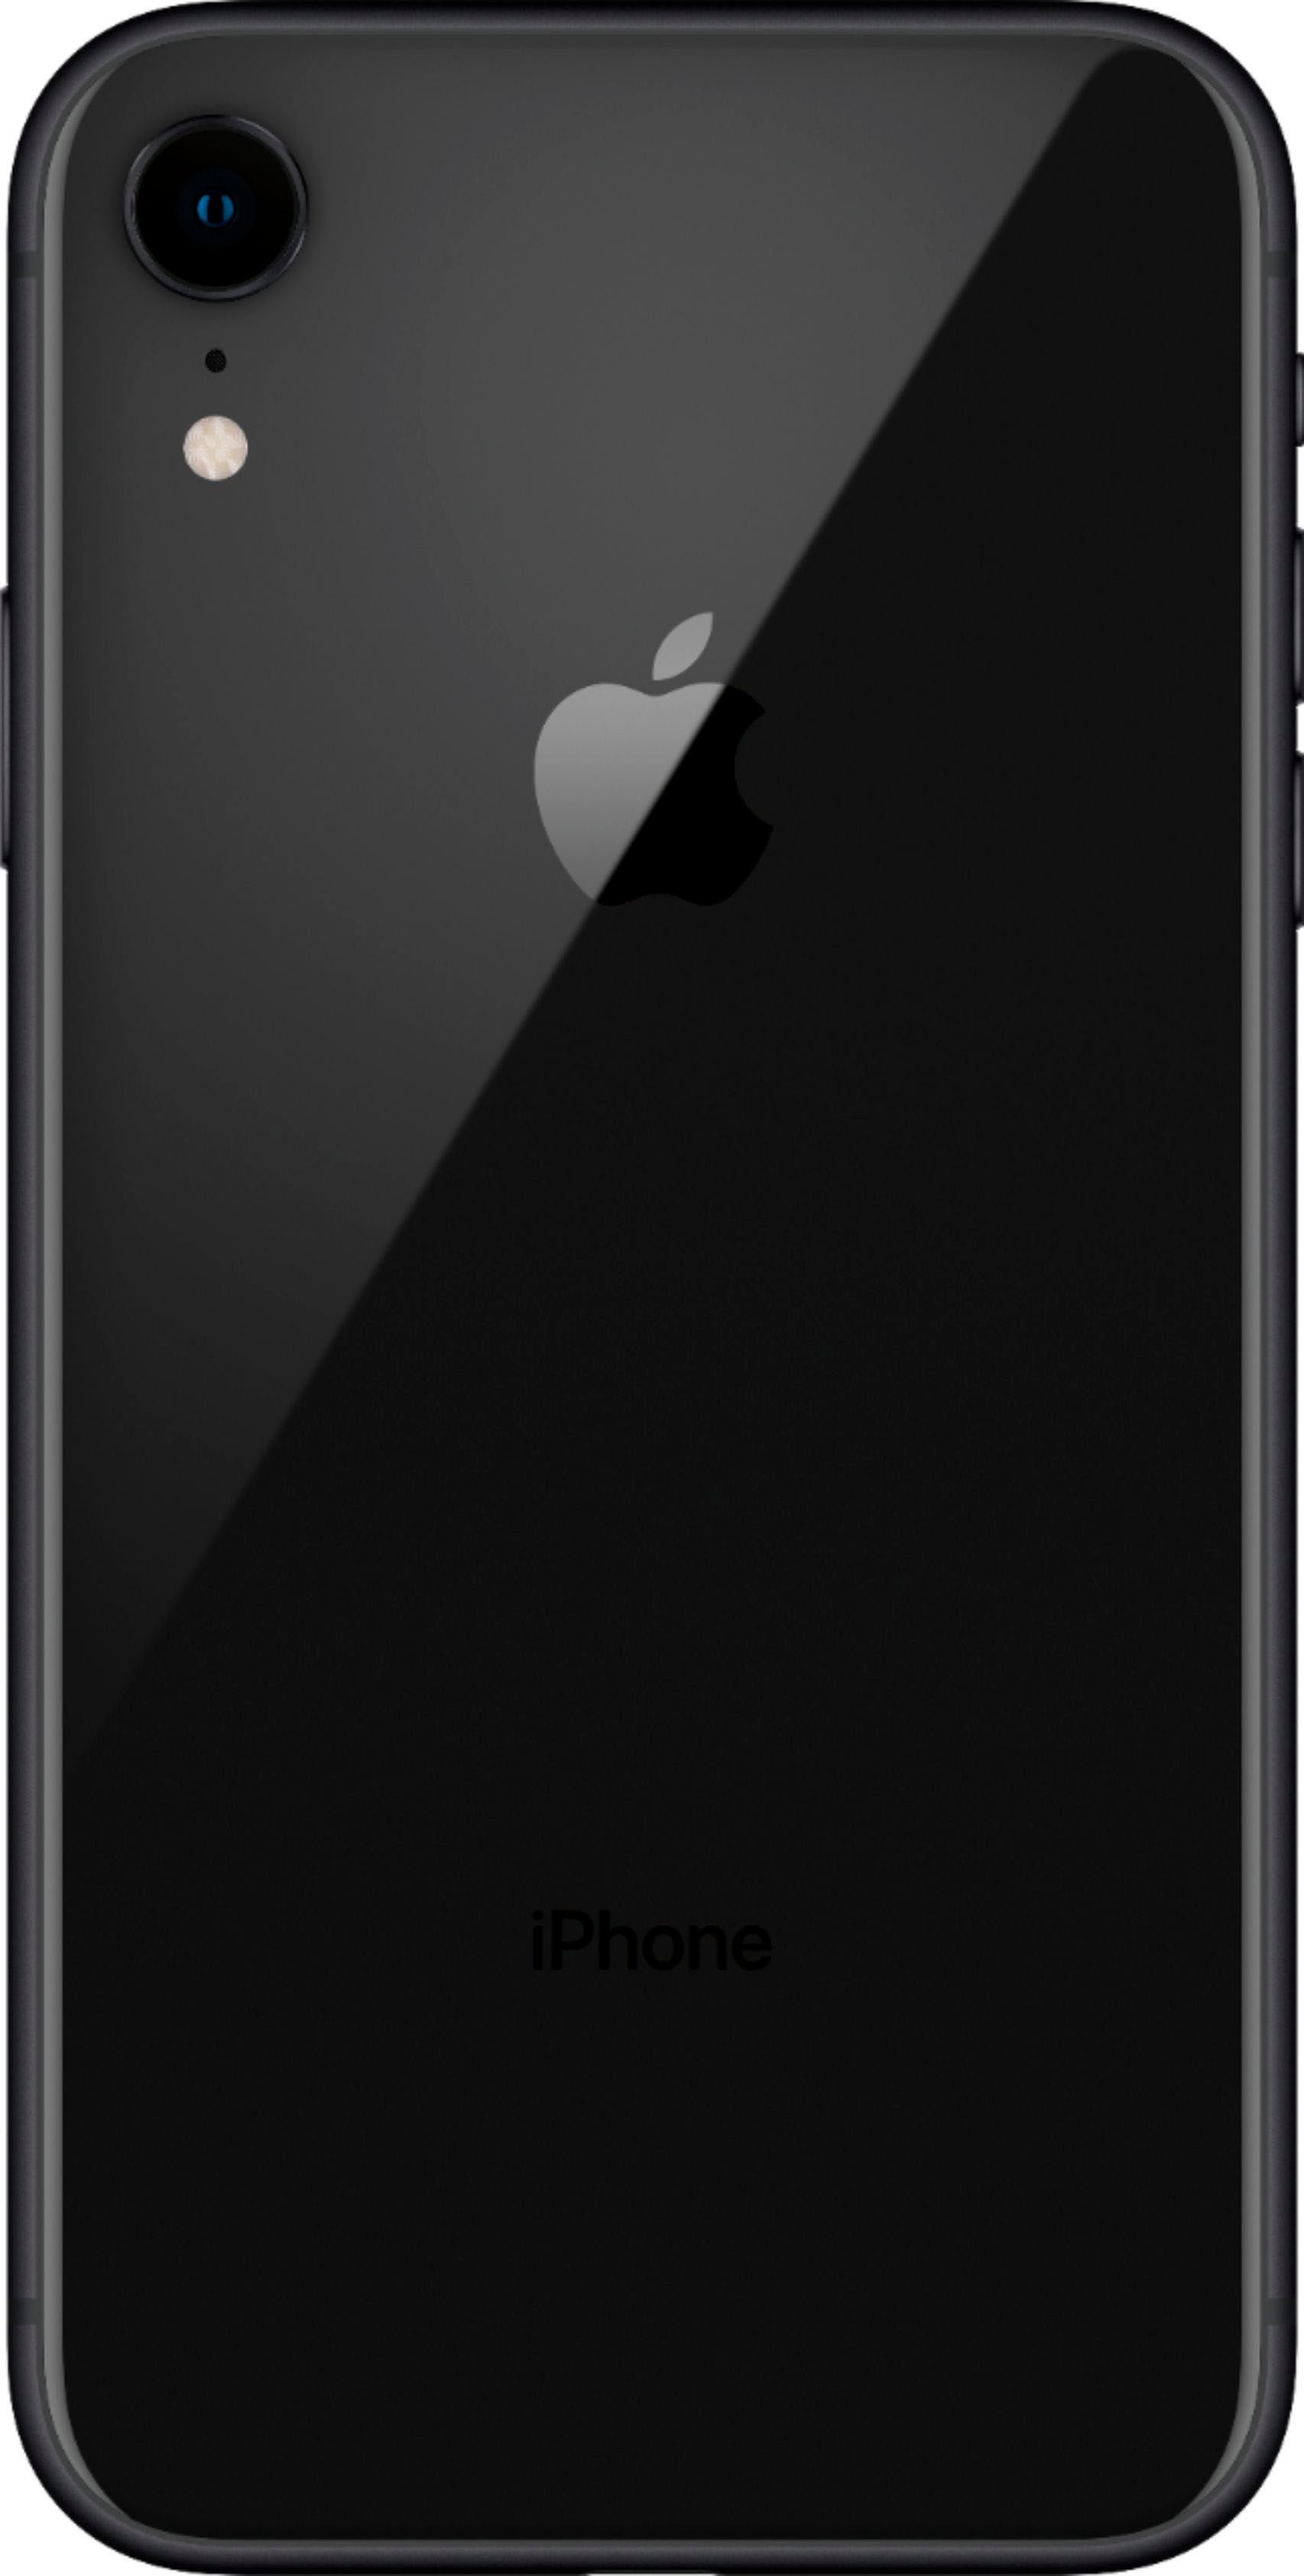 iPhone XR ブラック 64GB乗り換えた為出品です